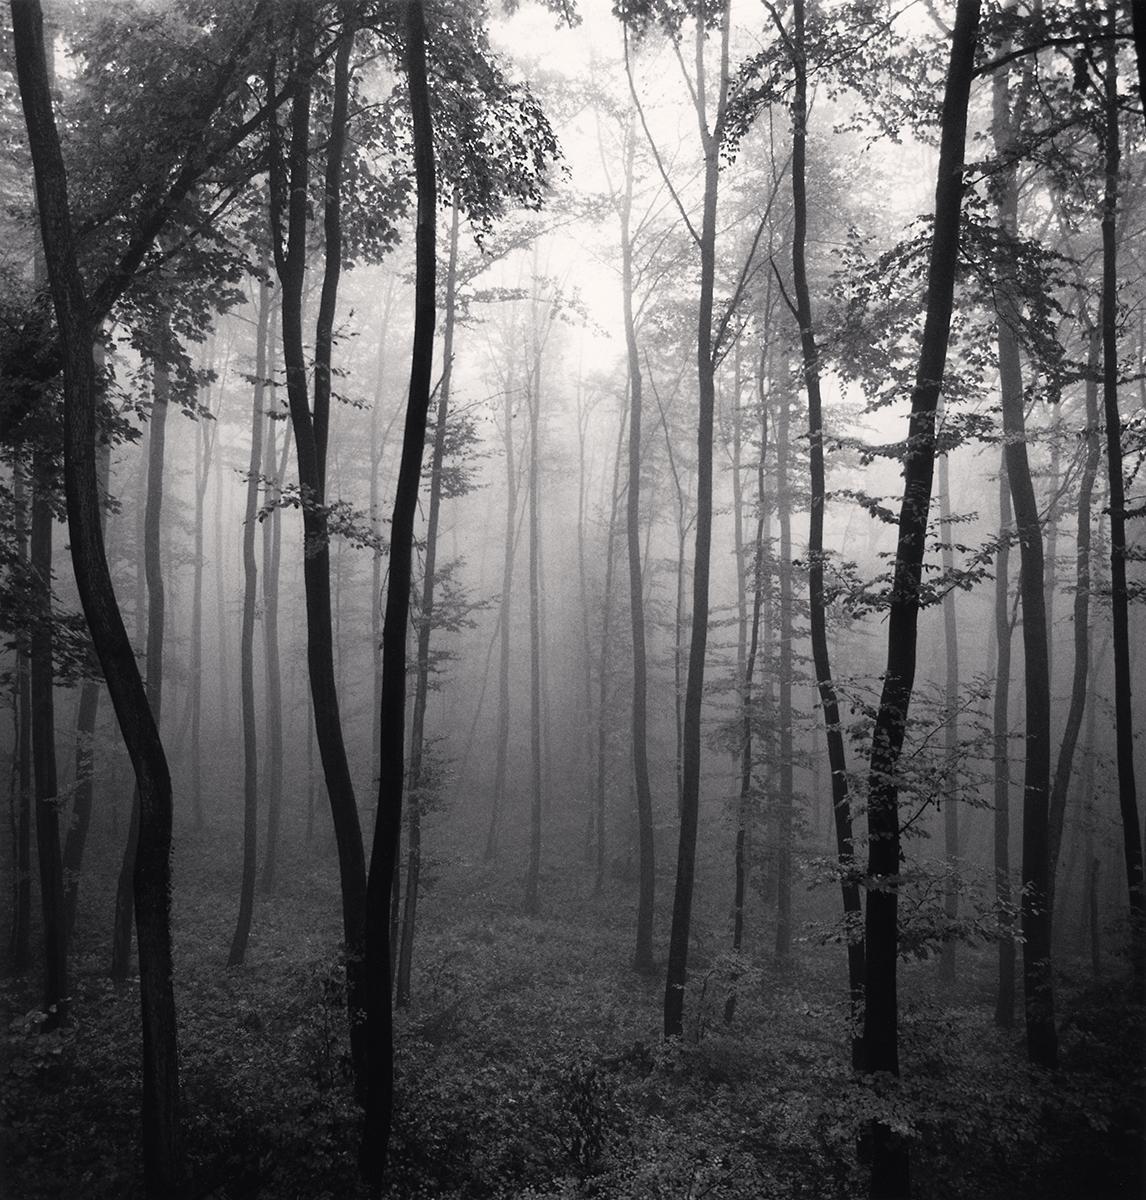 Jura Forest, Dornach, Suisse par Michael Kenna présente une scène forestière dramatique. La forêt dense s'estompe à l'arrière-plan, le brouillard enveloppe les arbres. Les arbres sombres encadrent un chemin qui s'enfonce dans le paysage. 

Jura